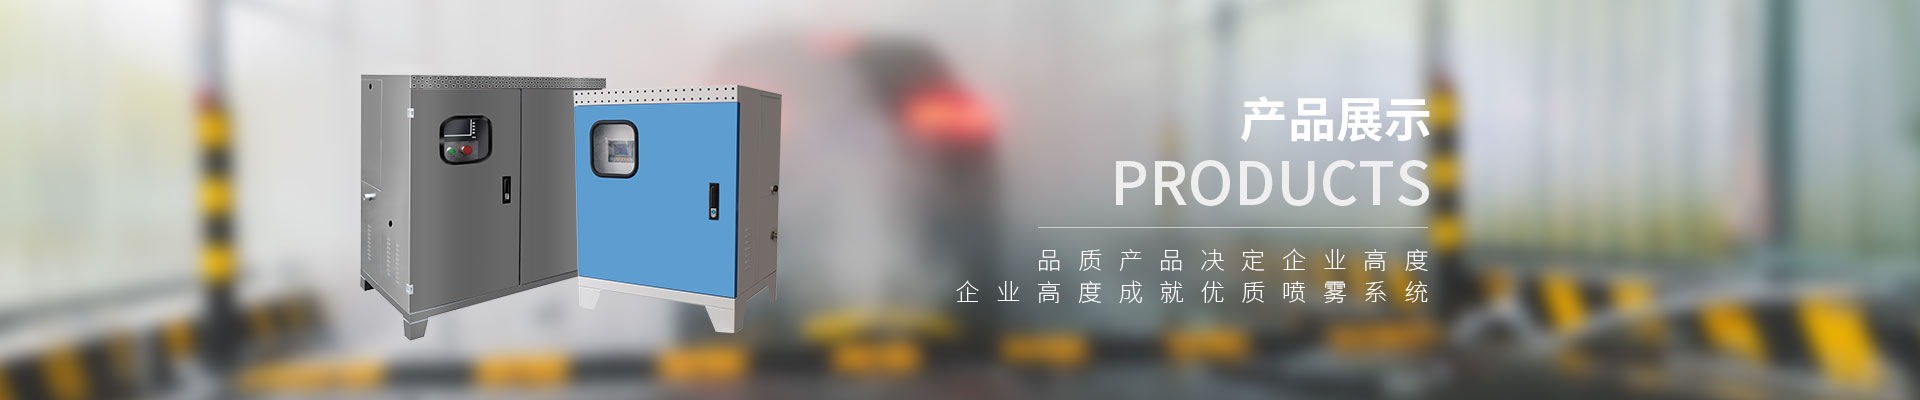 雾森-人造雾设备